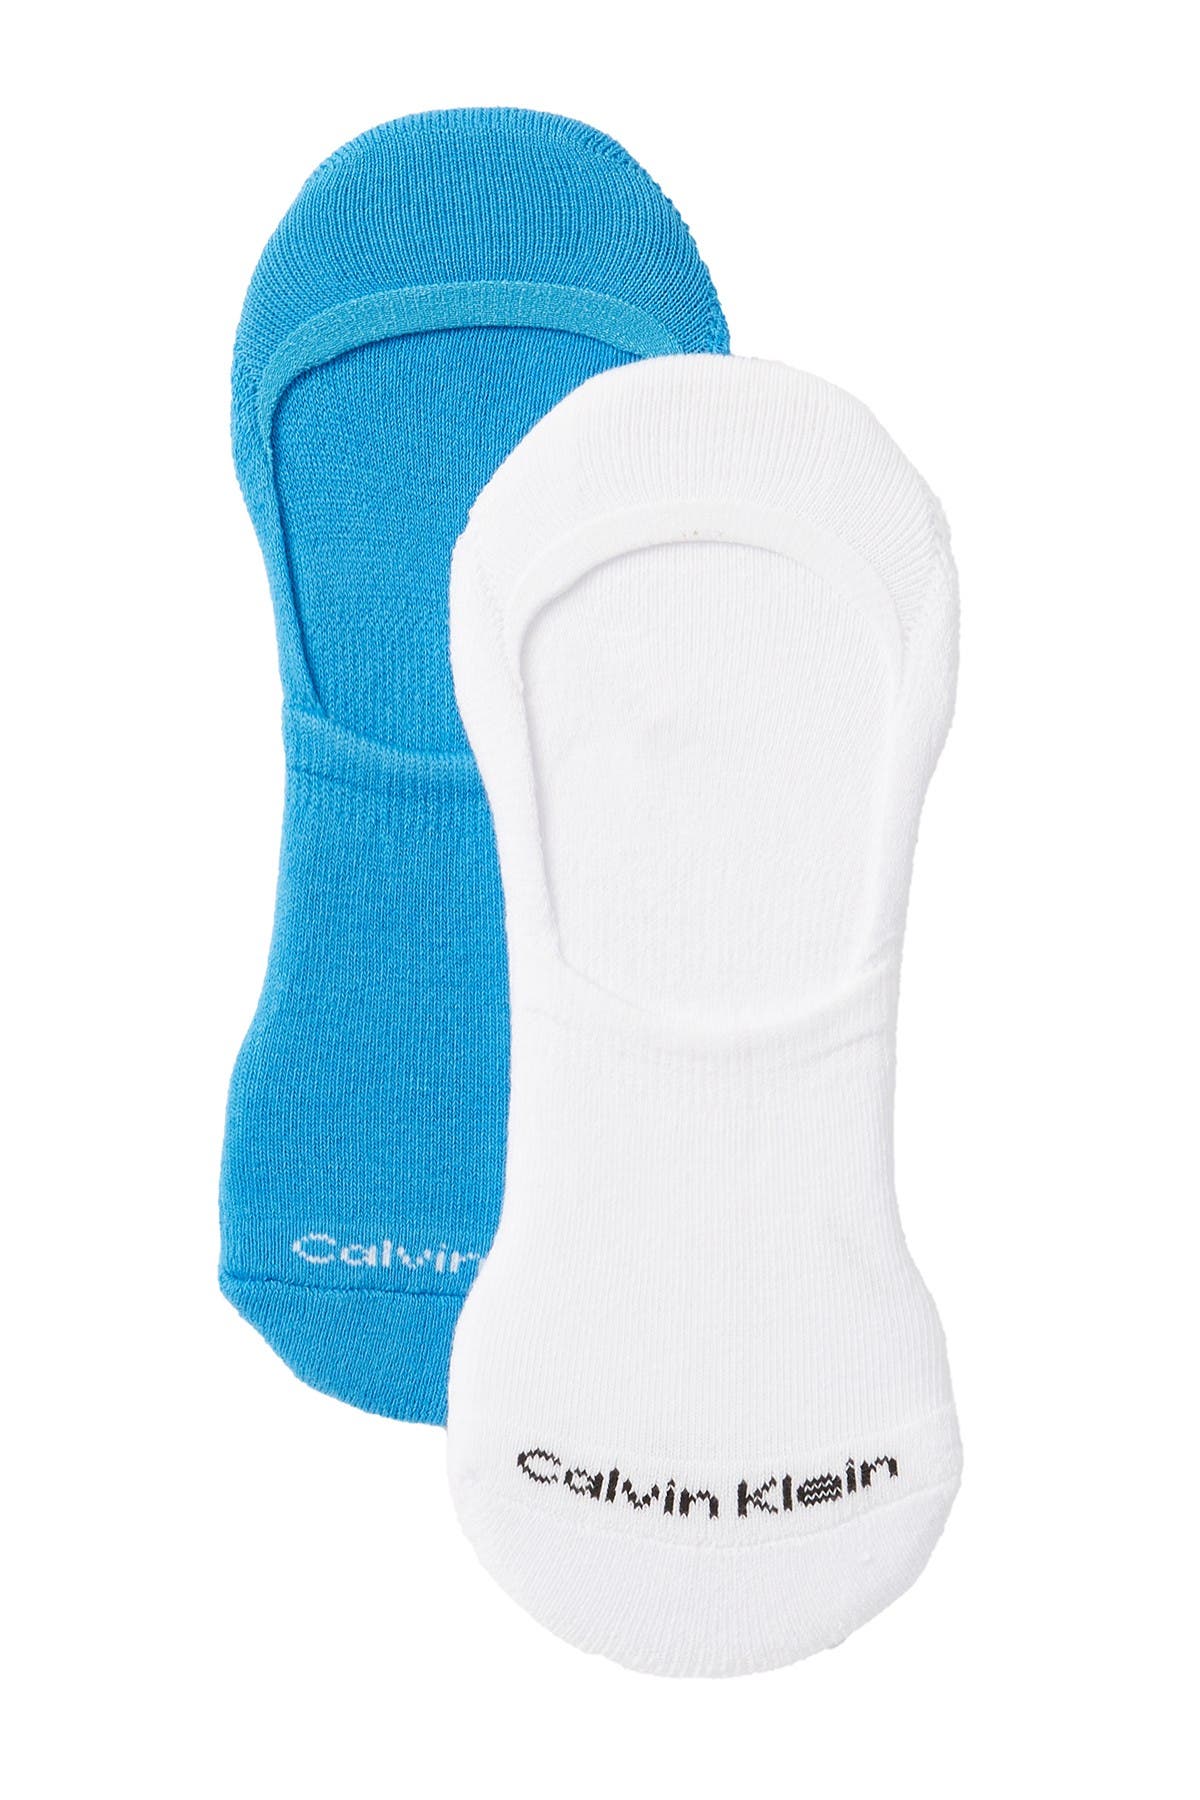 Calvin Klein No Show Socks In Open Miscellaneous12